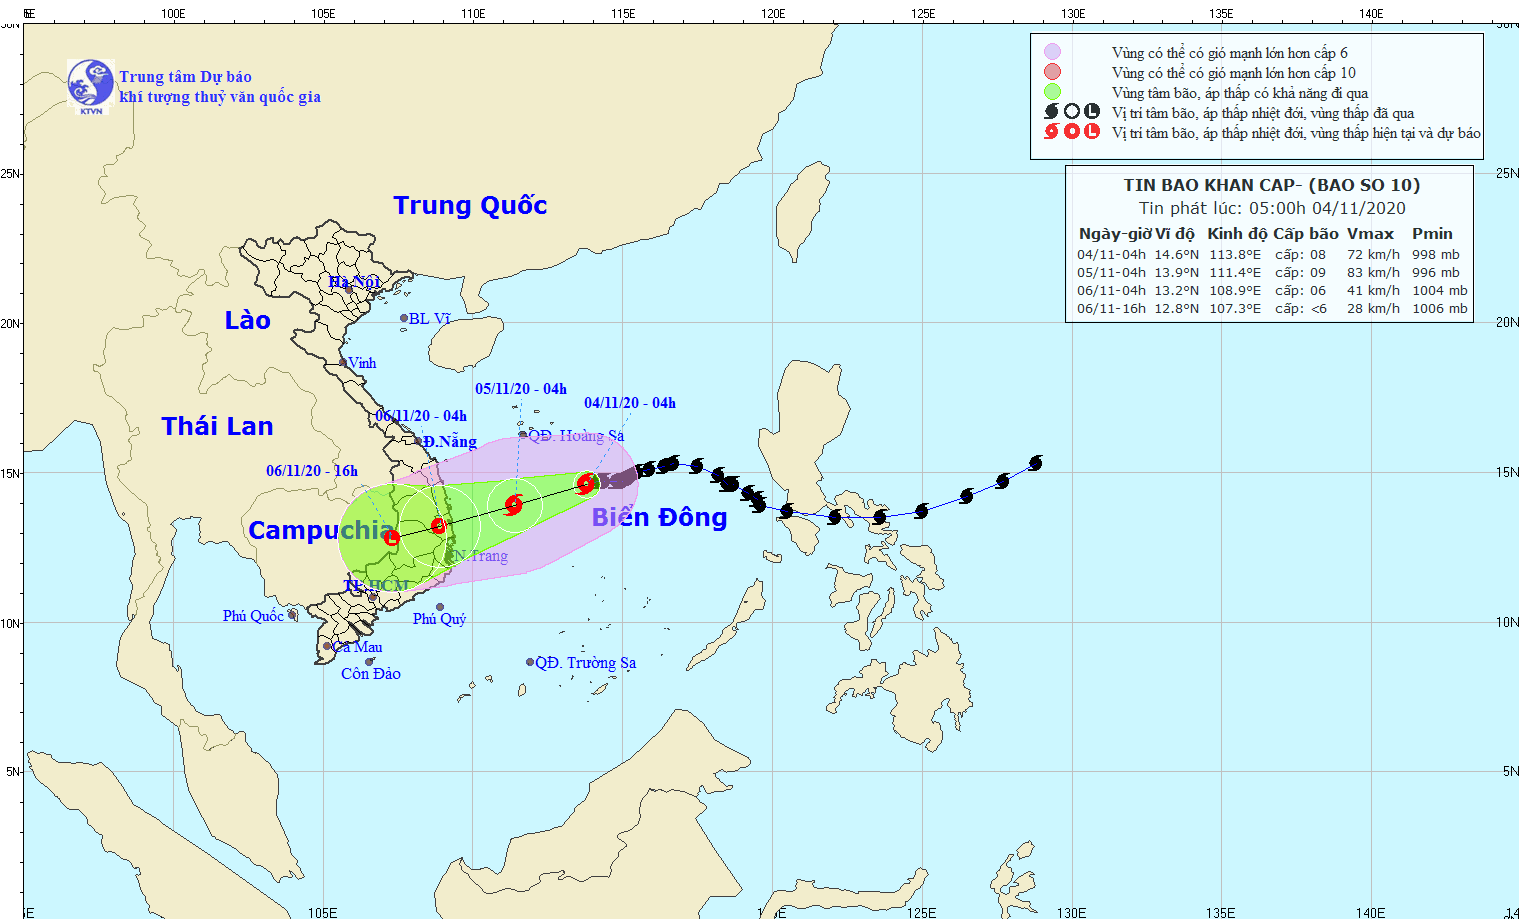 Dự báo thời tiết: Tin bão khẩn cấp, bão số 10 sẽ đi vào đất liền các tỉnh Quảng Ngãi đến Khánh Hòa